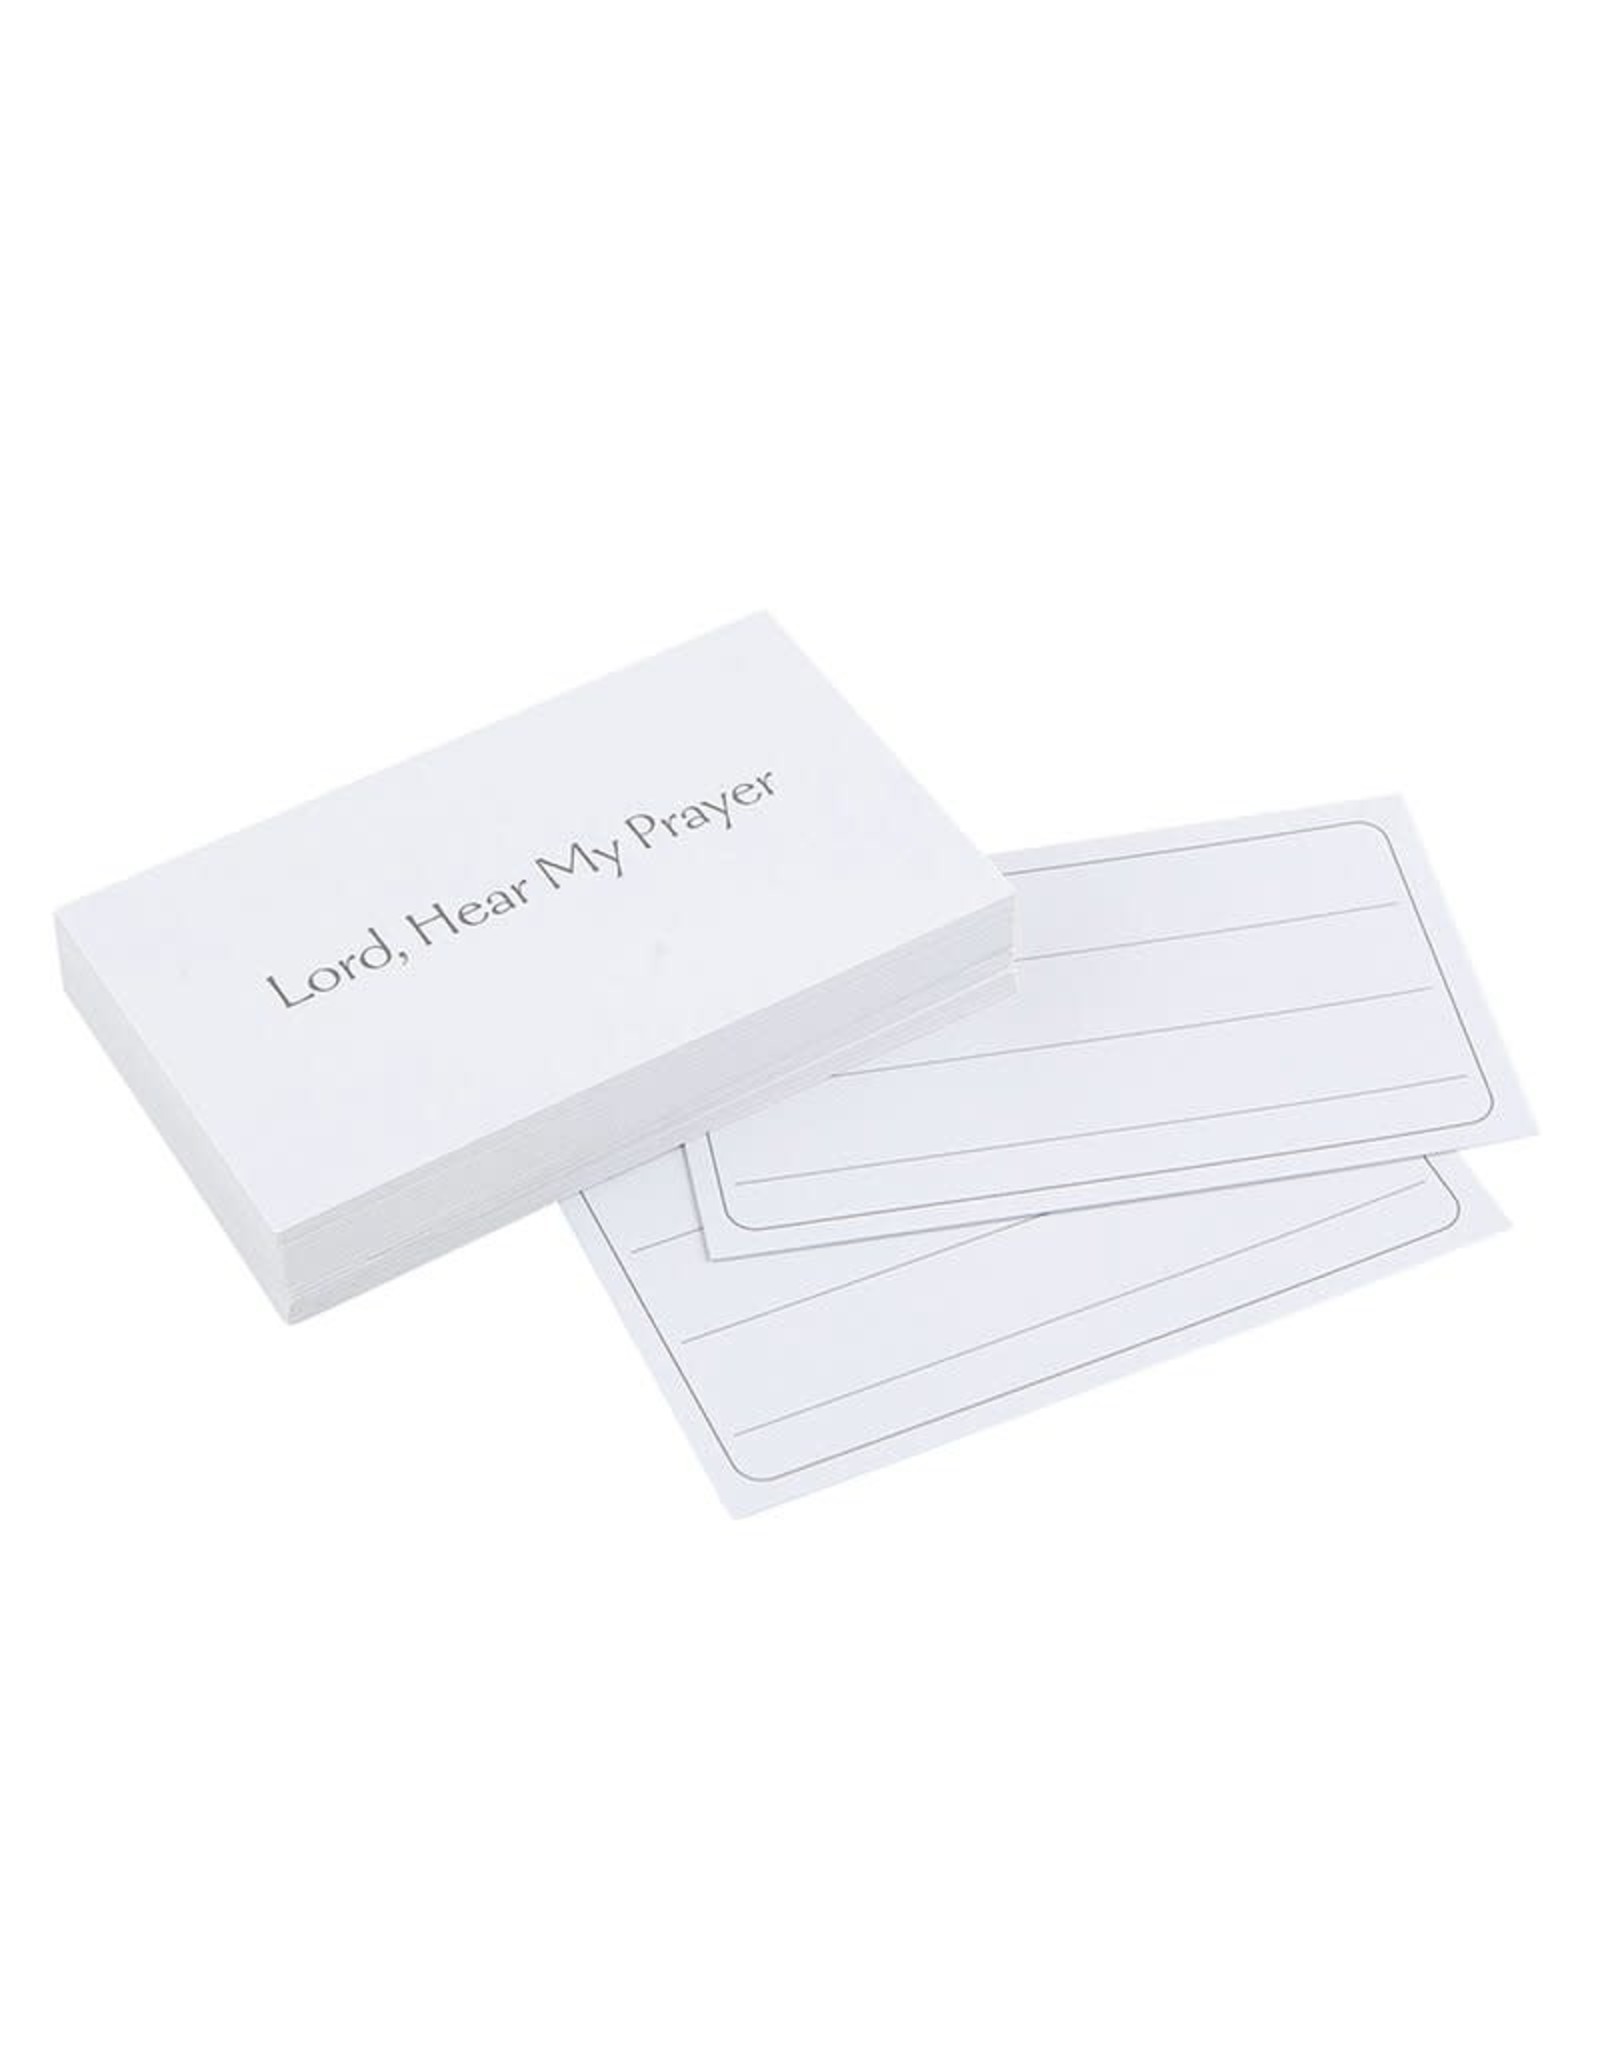 Autom Prayer Card Set, 50 Cards